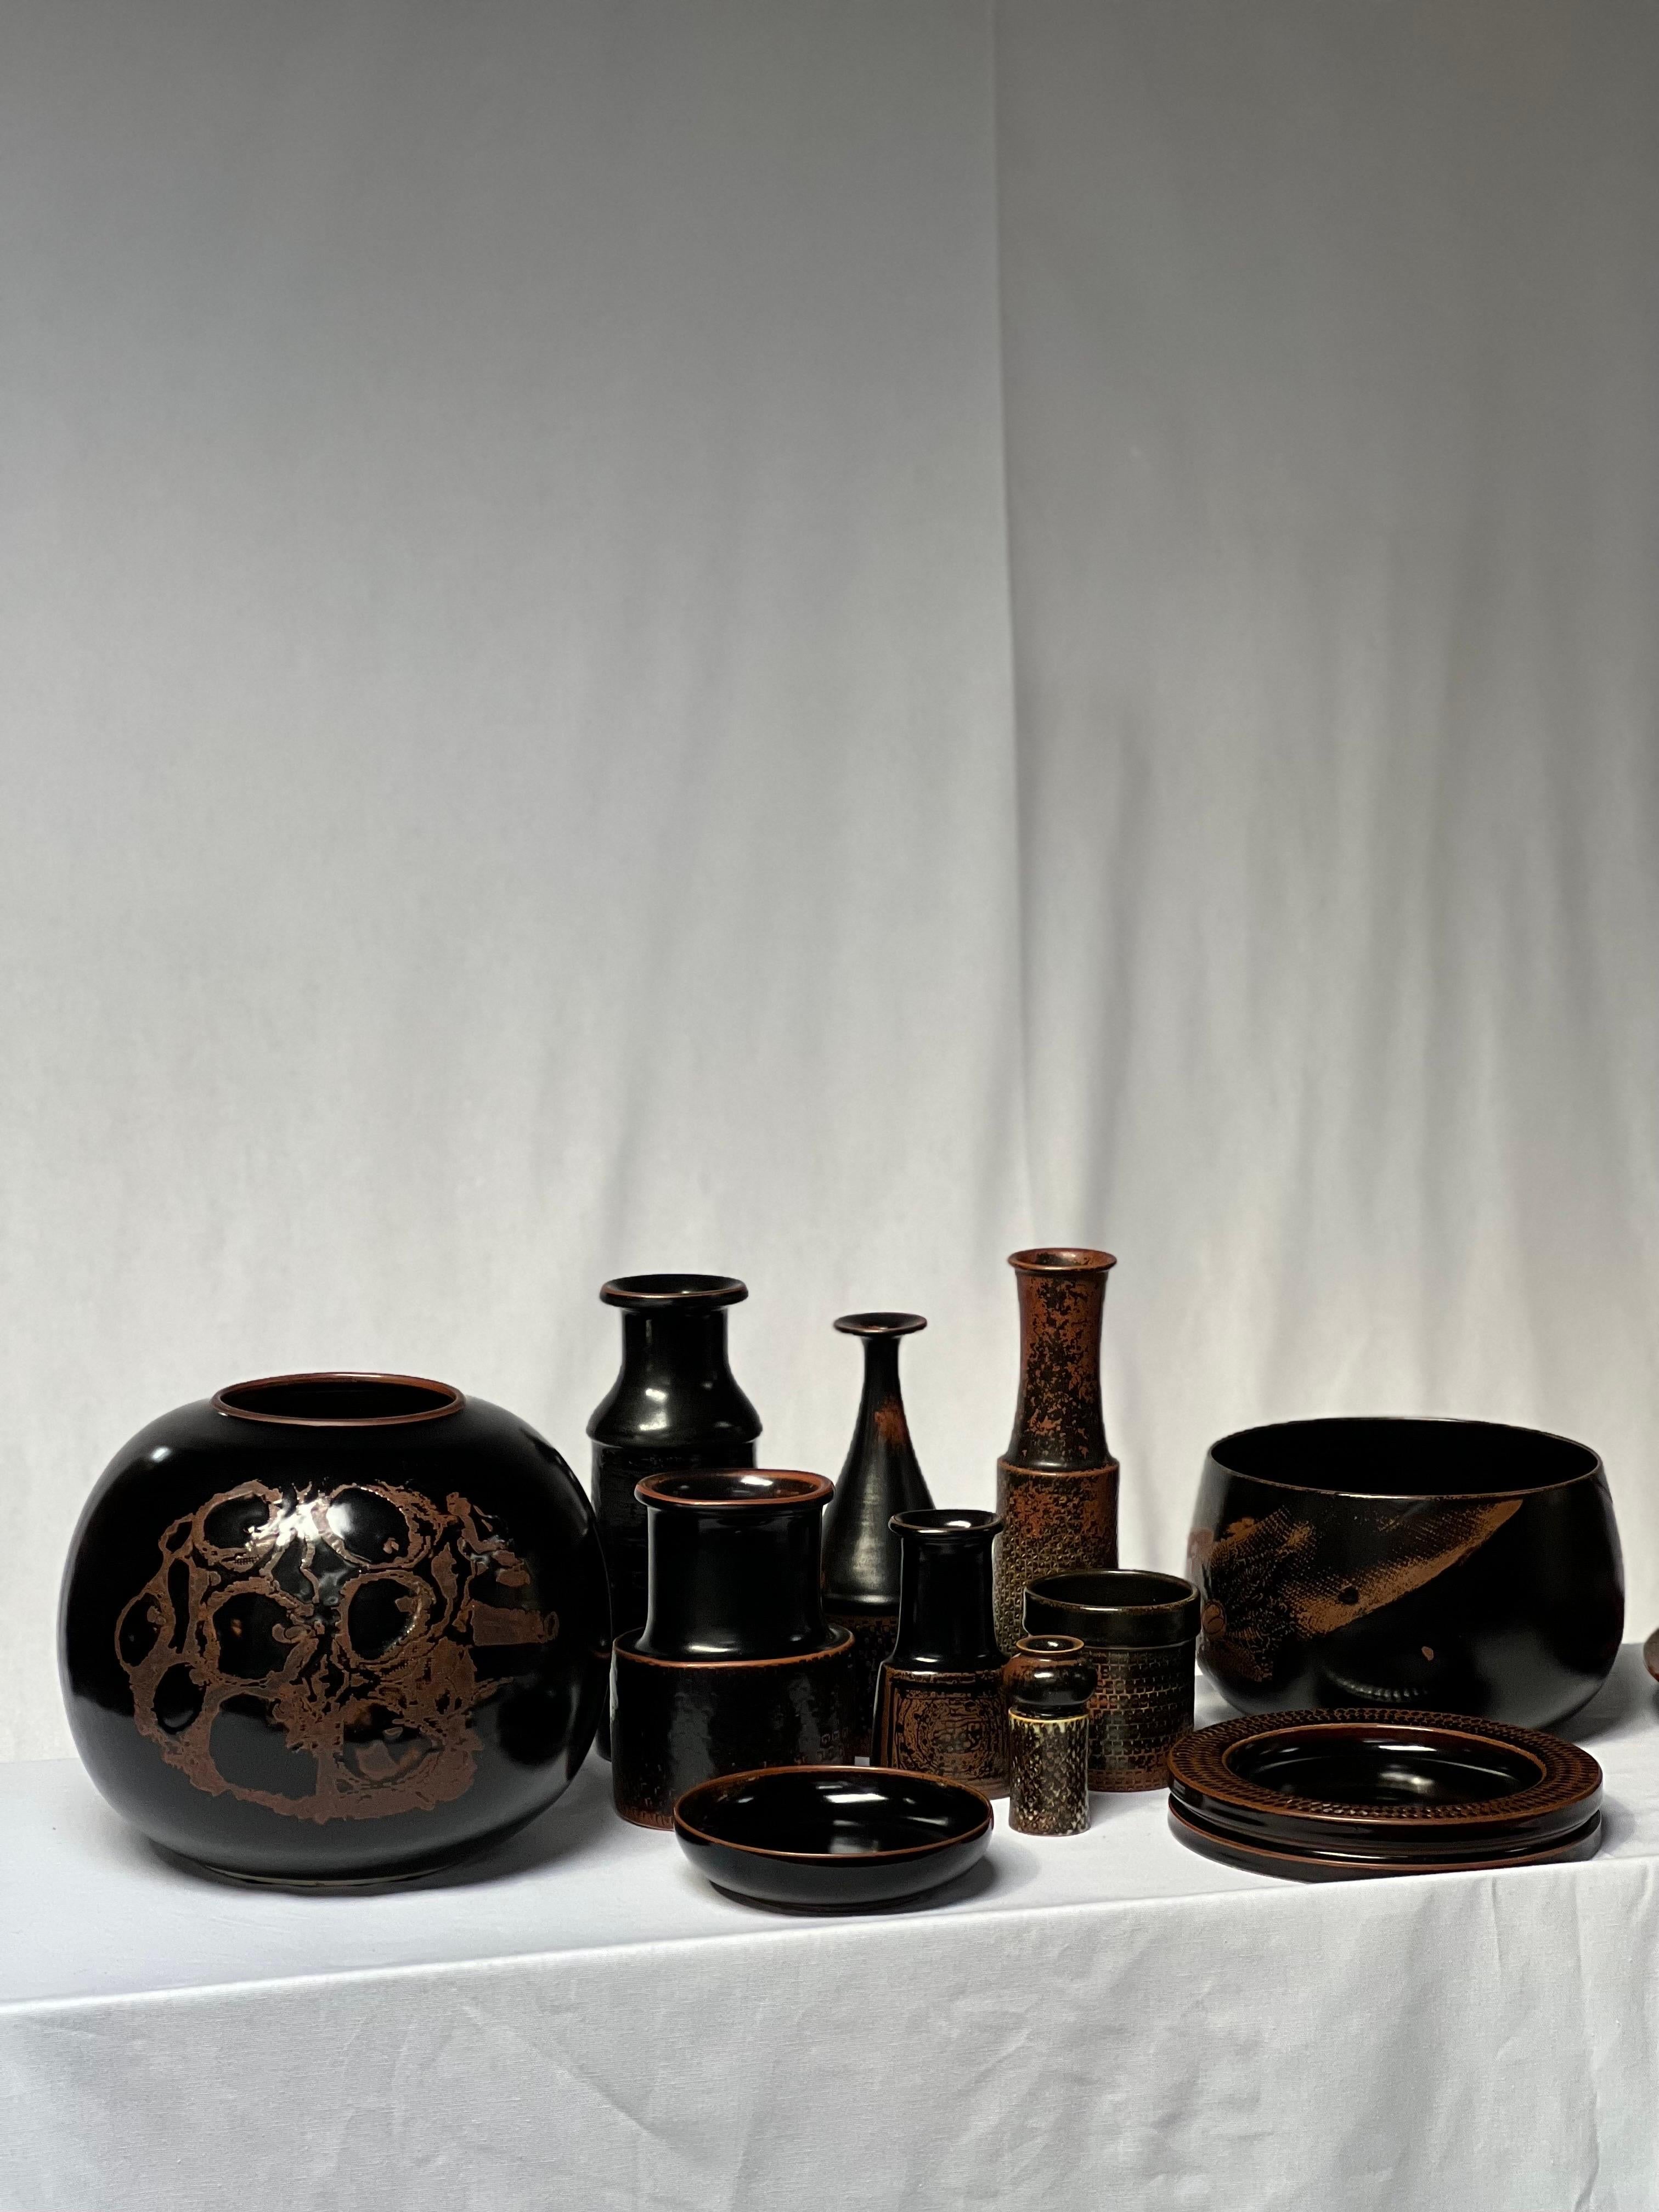 Stig Lindberg Unique Vase in black Glaze Tenmoku Made by Hand Sweden 1968 For Sale 1